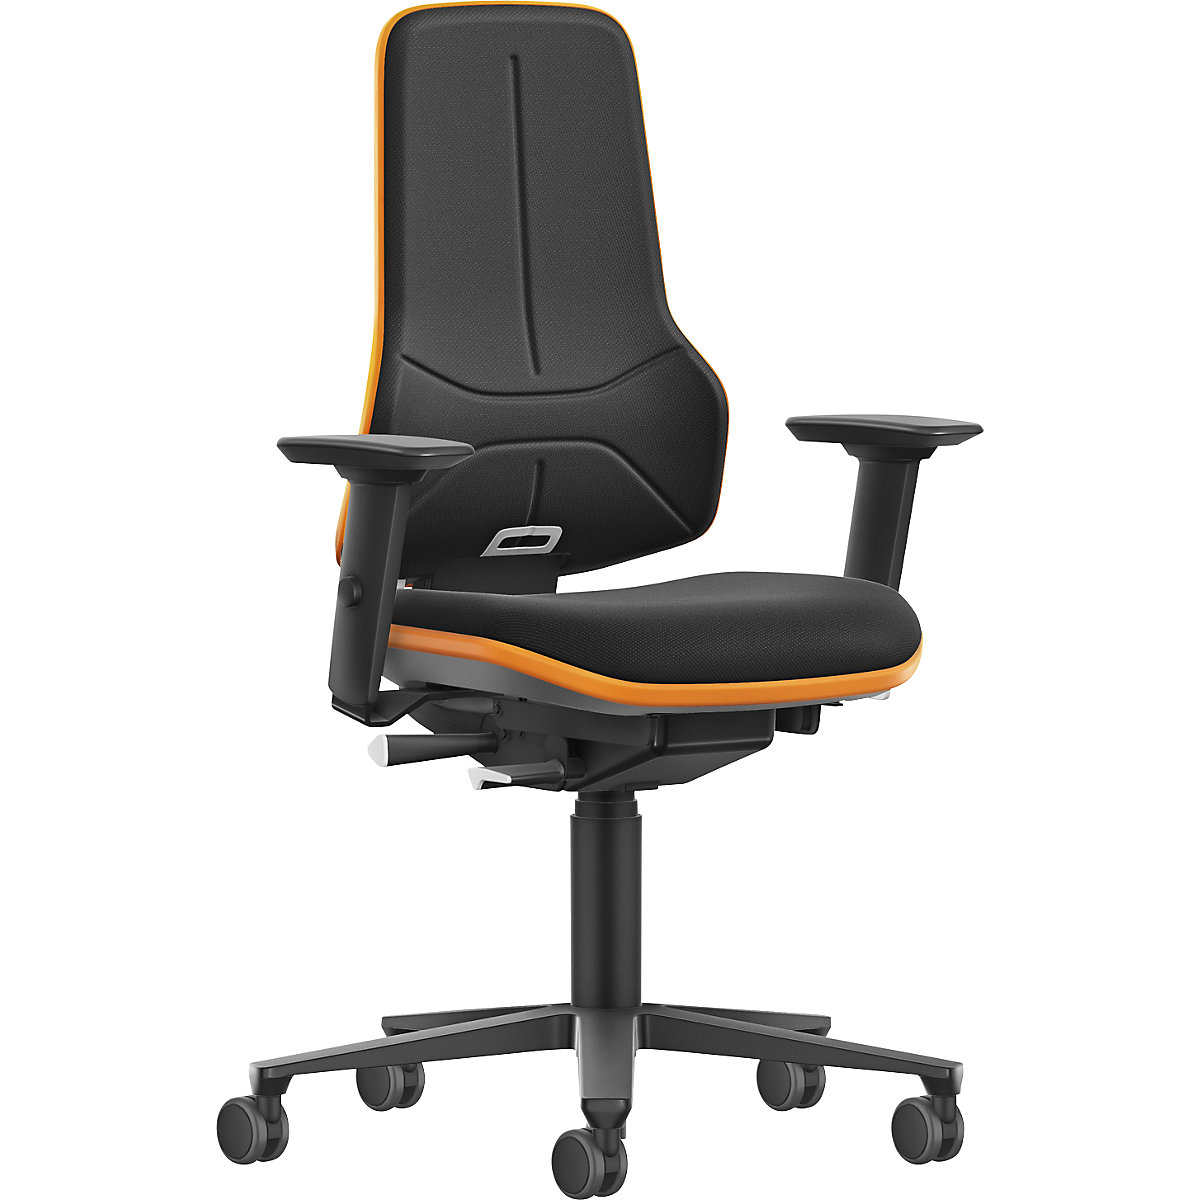 Pracovní otočná židle pro velká zatížení NEON XXL, kolečka - bimos